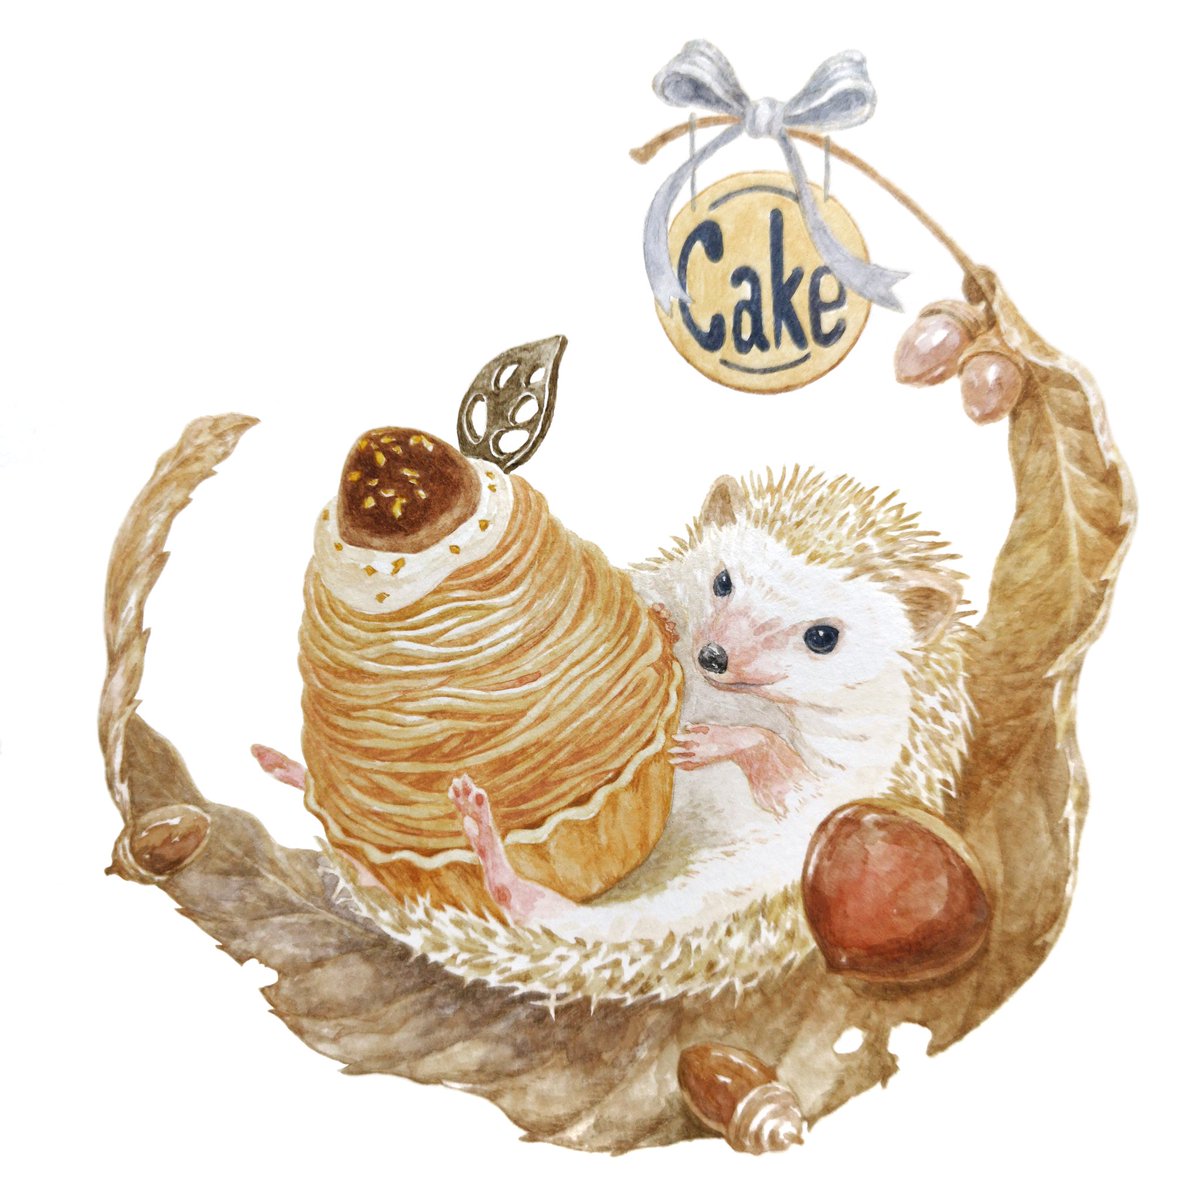 تويتر Hirotoshi Kanou على تويتر 森の中のケーキ屋さん モンブランケーキとハリネズミ 今日から９月 実りの秋がやってきますね ハリネズミ モンブラン 秋のスイーツ 動物イラスト 食べ物イラスト Animalillustration Foodillustration T Co